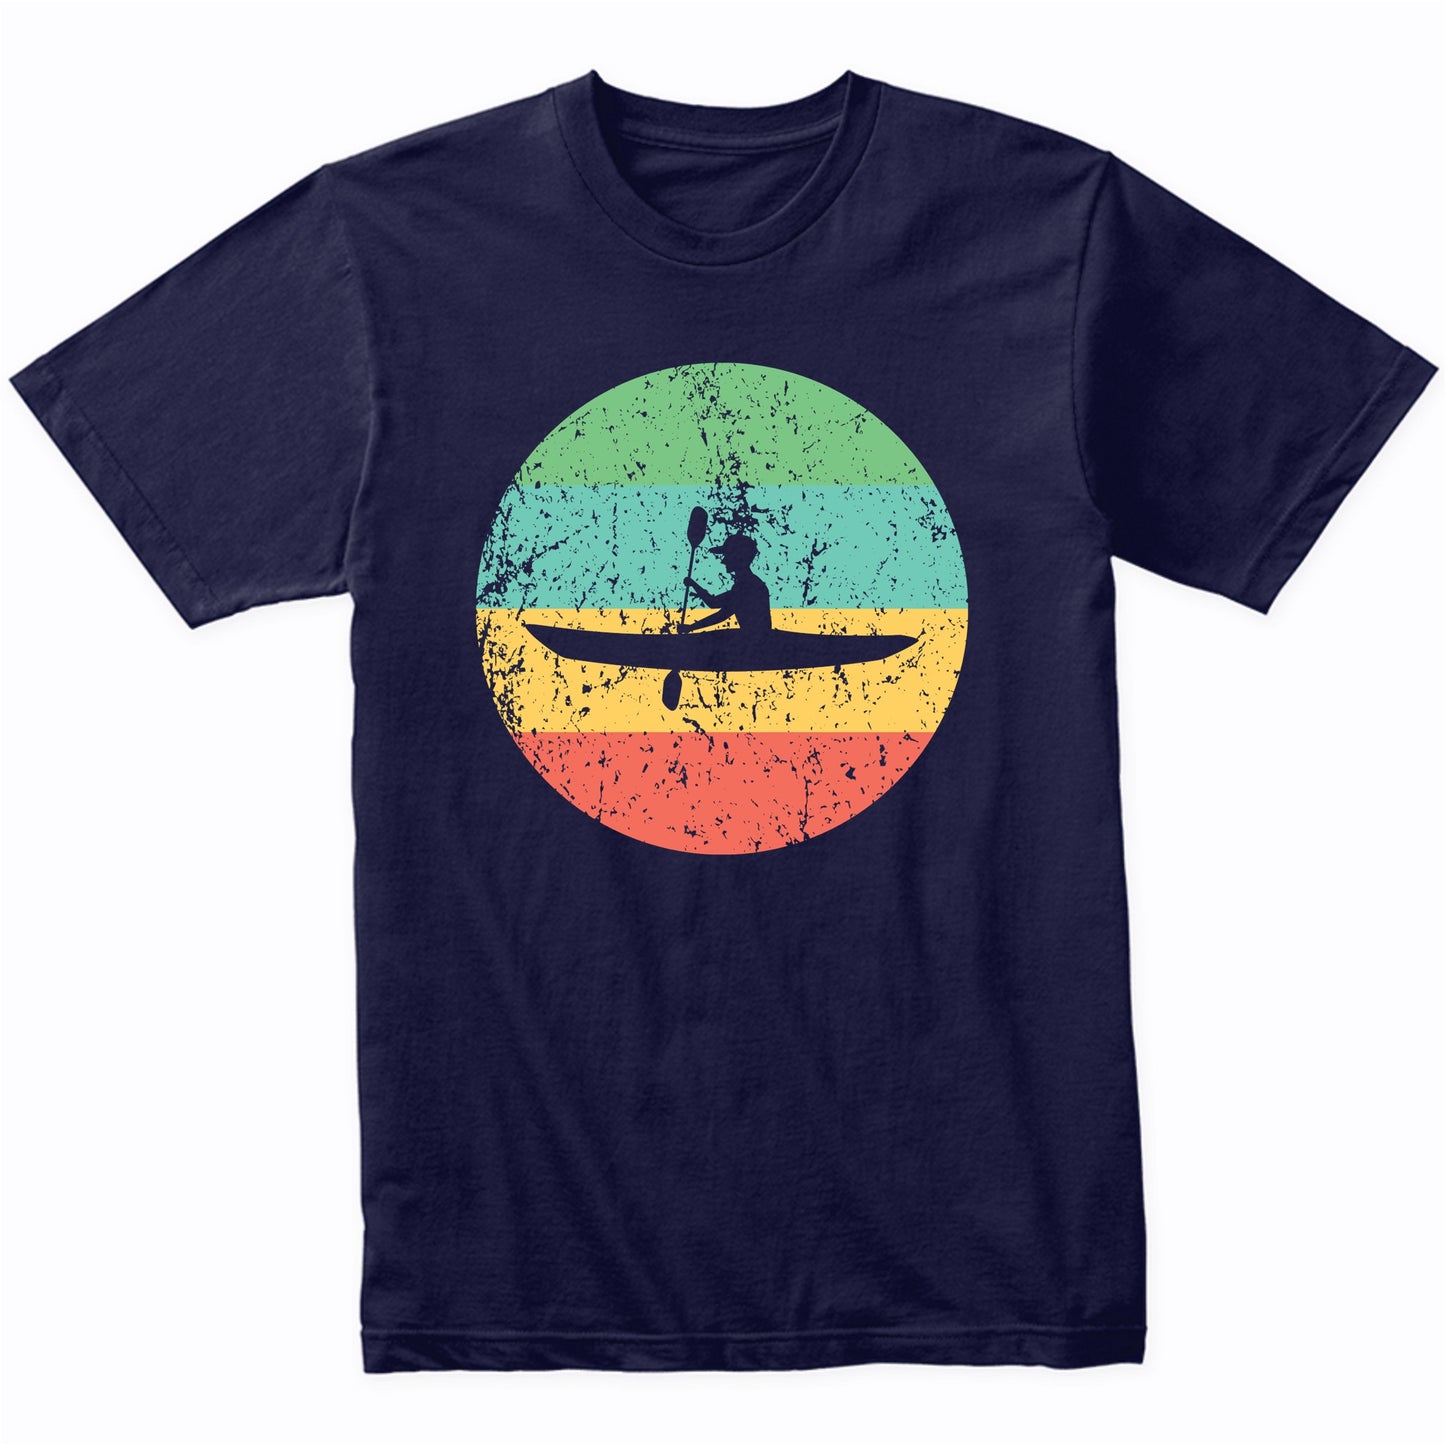 Kayaking Shirt - Vintage Retro Kayak T-Shirt